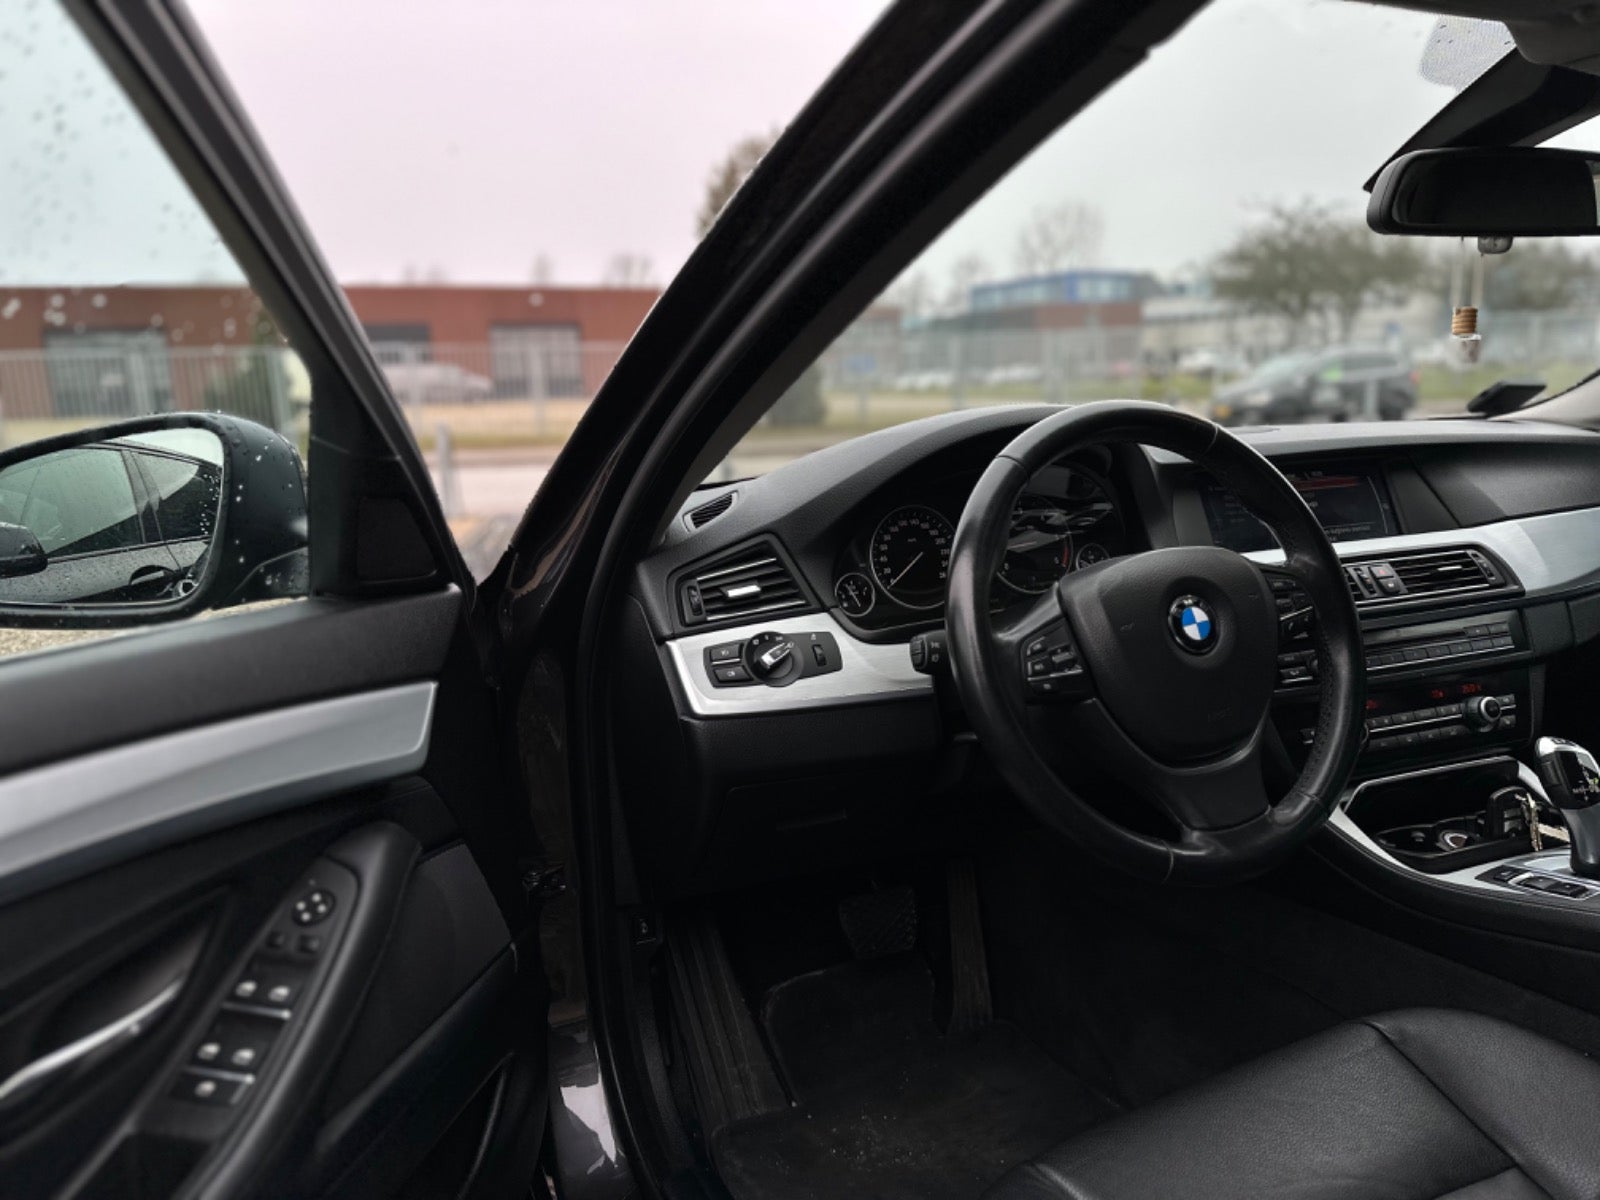 BMW 520d 2013